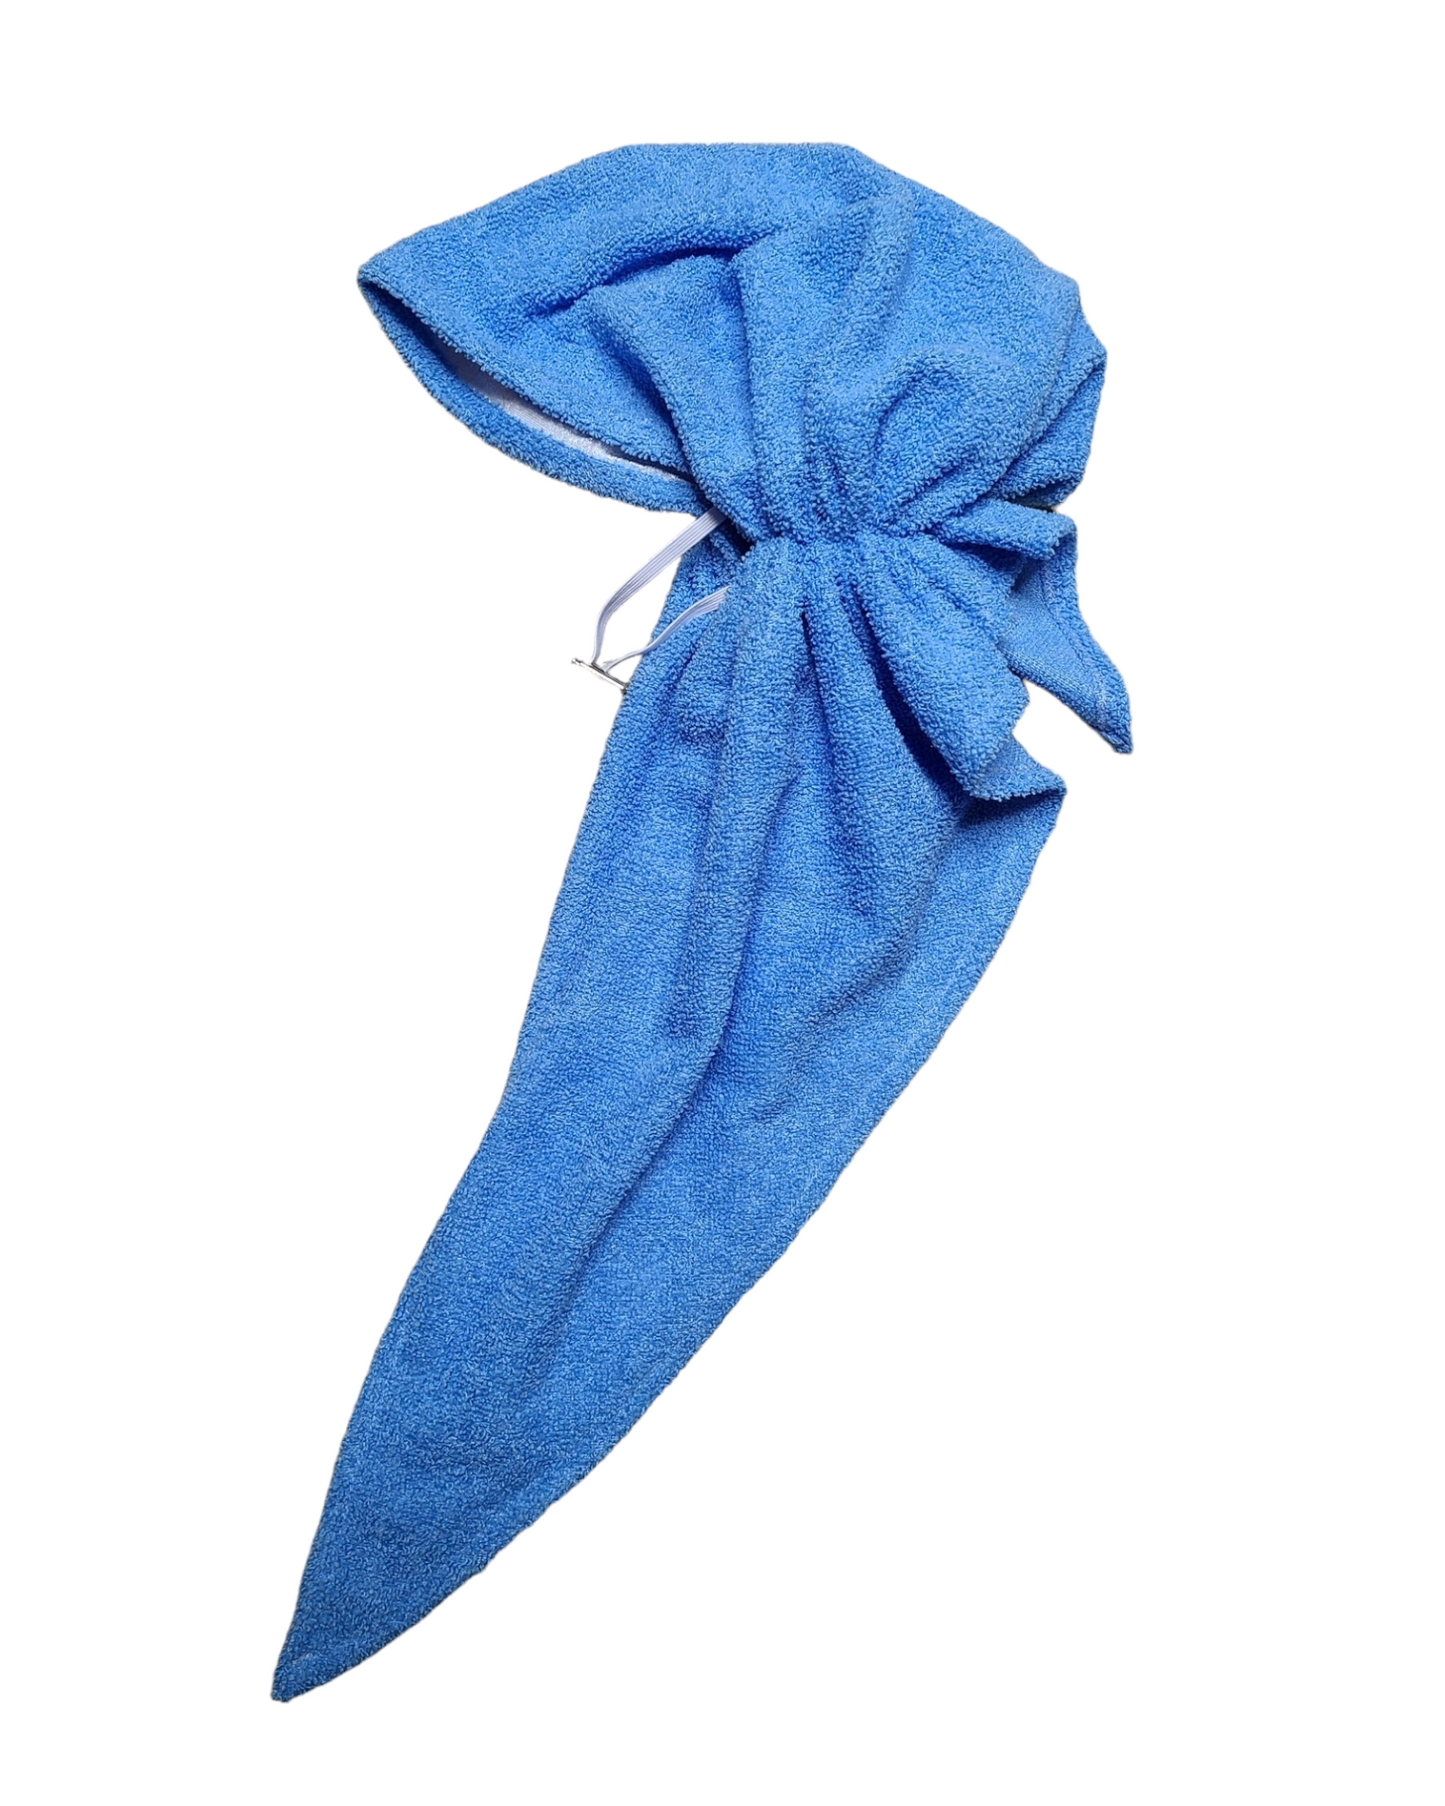 Post-Shower (Towel) Pretied Scarf - Keter Hayofi Mitpachot